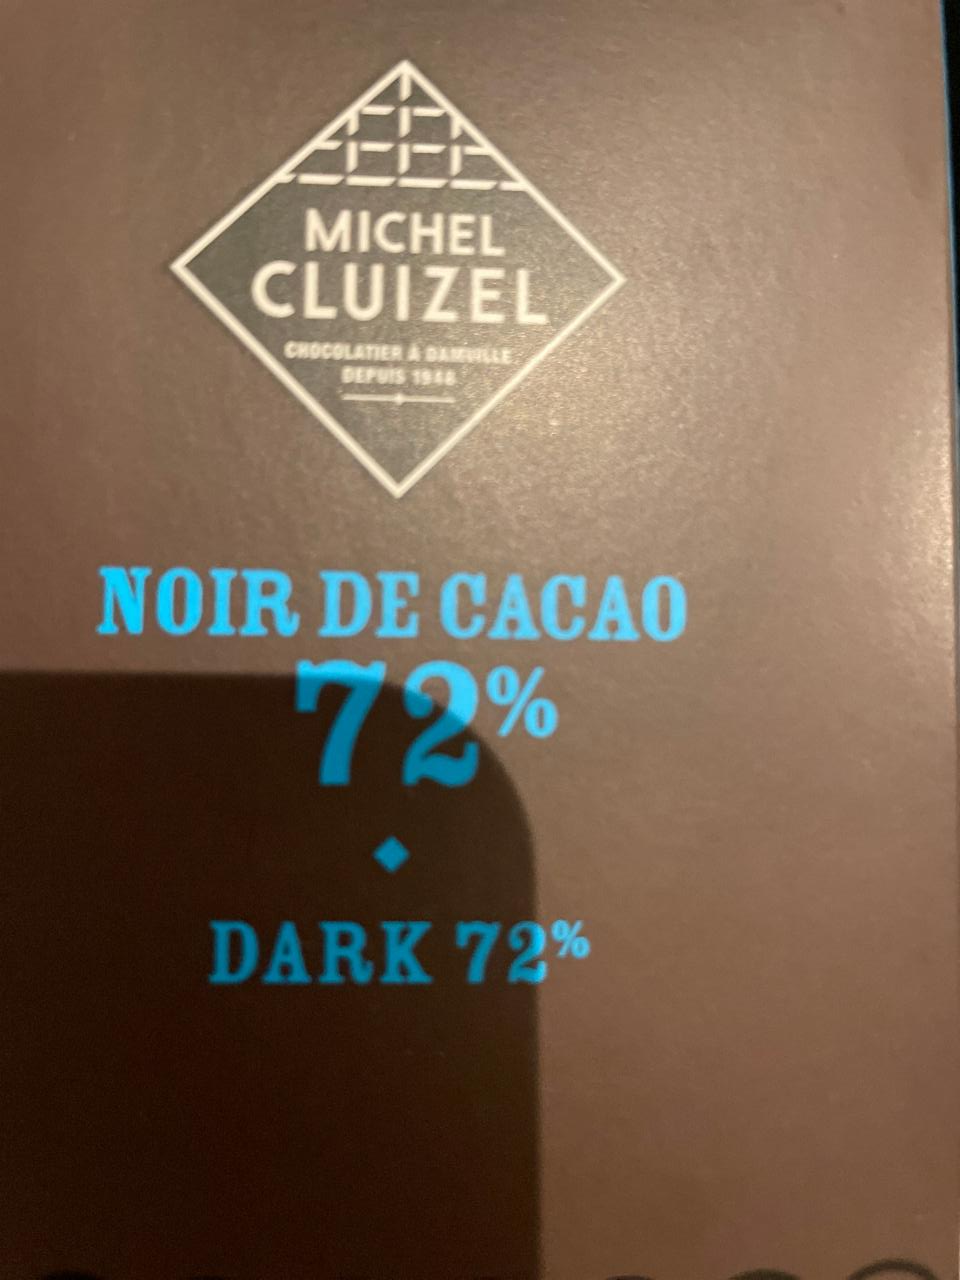 Fotografie - Noir de Cacao 72% Michel Cluizel